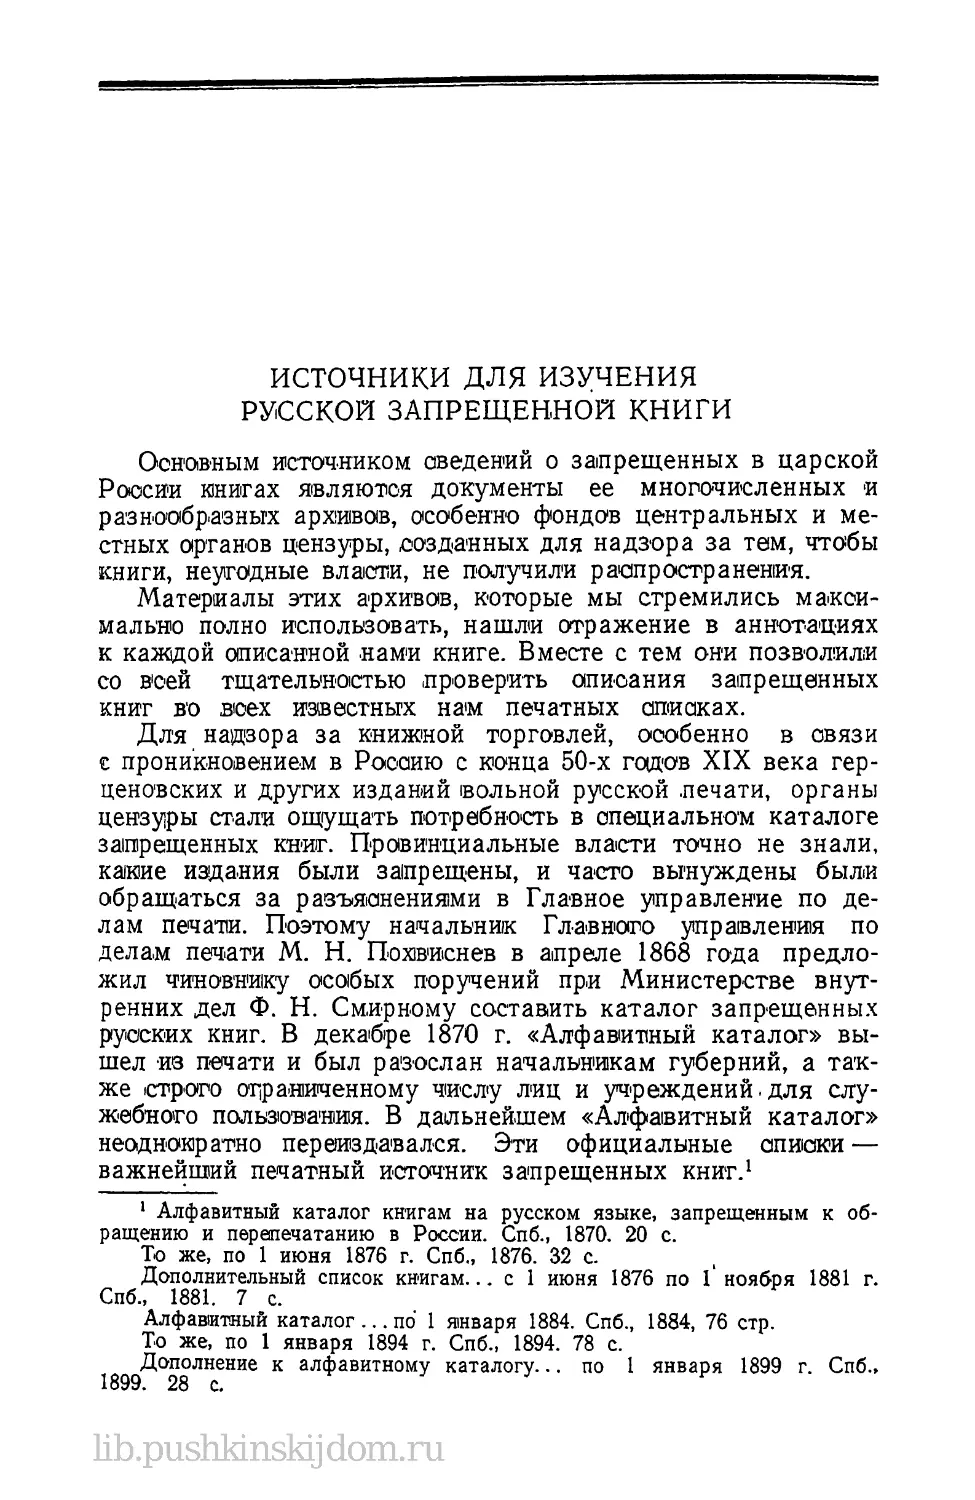 Источники для изучения русской запрещенной книги